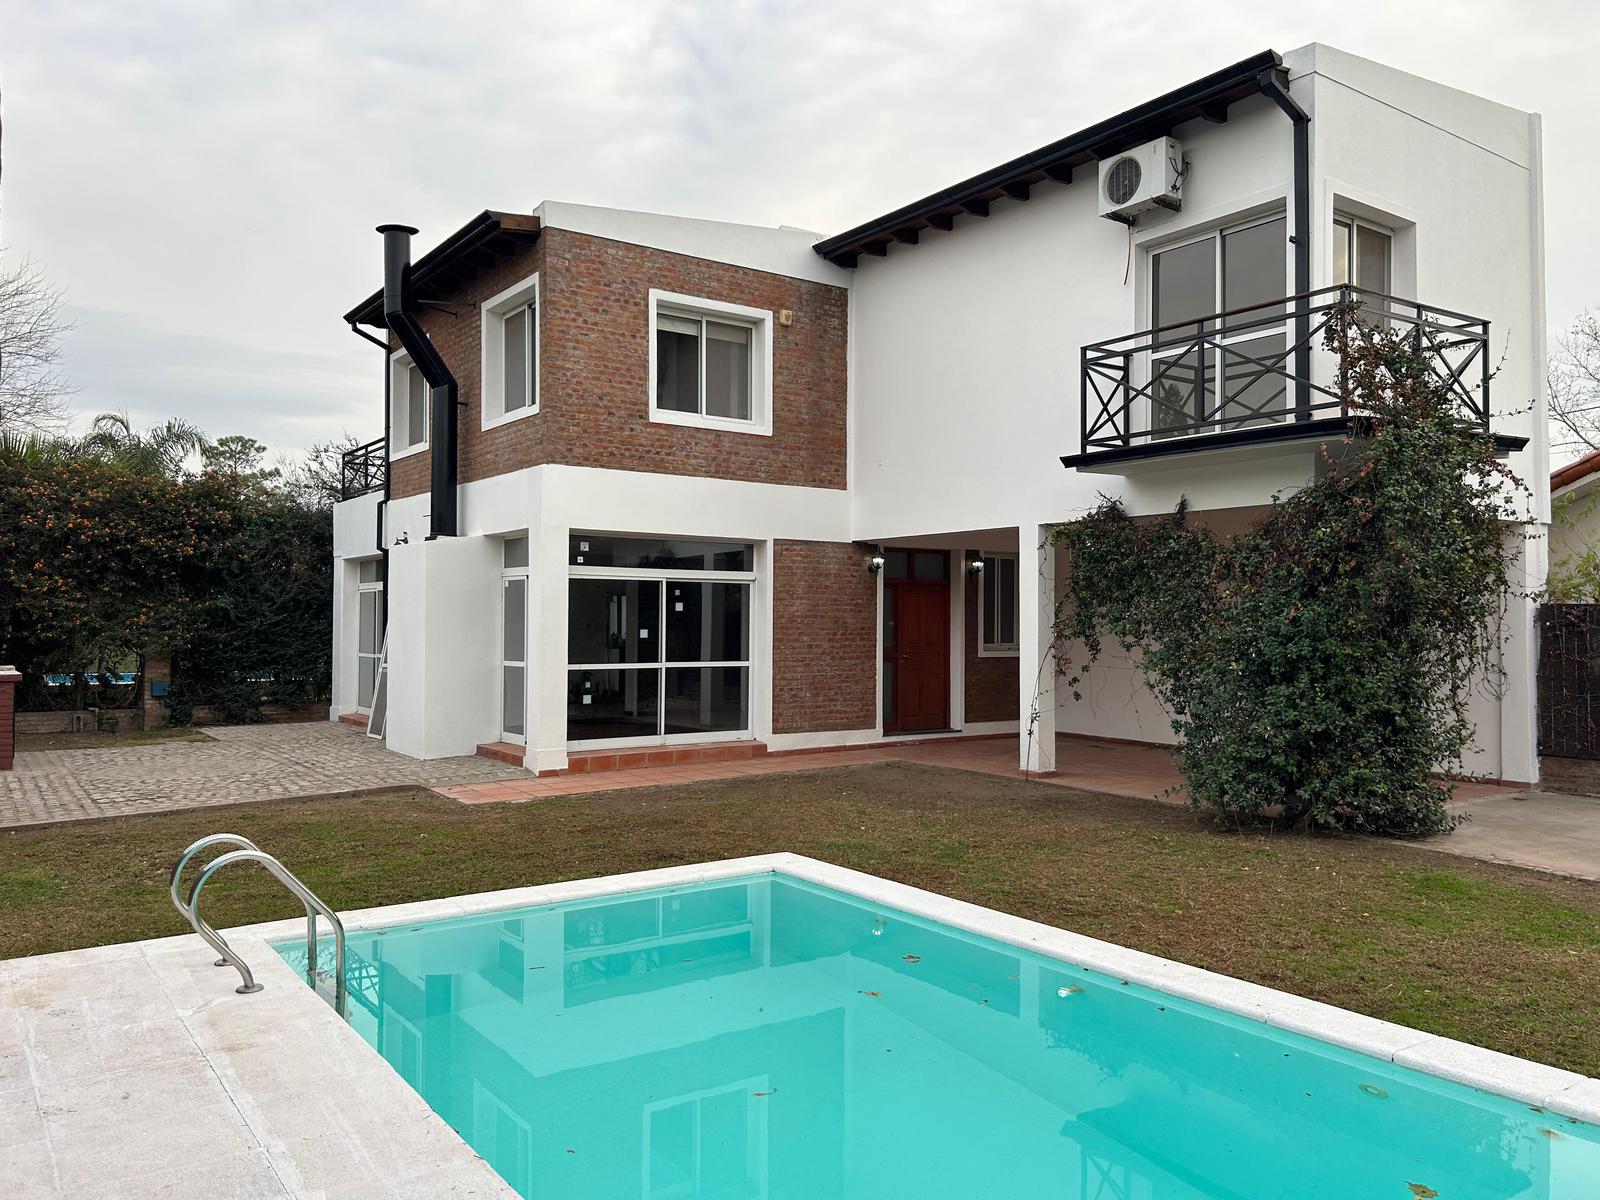 VENTA - Casa - 4 dormitorios - Jardín con piscina - Garita 9, Funes